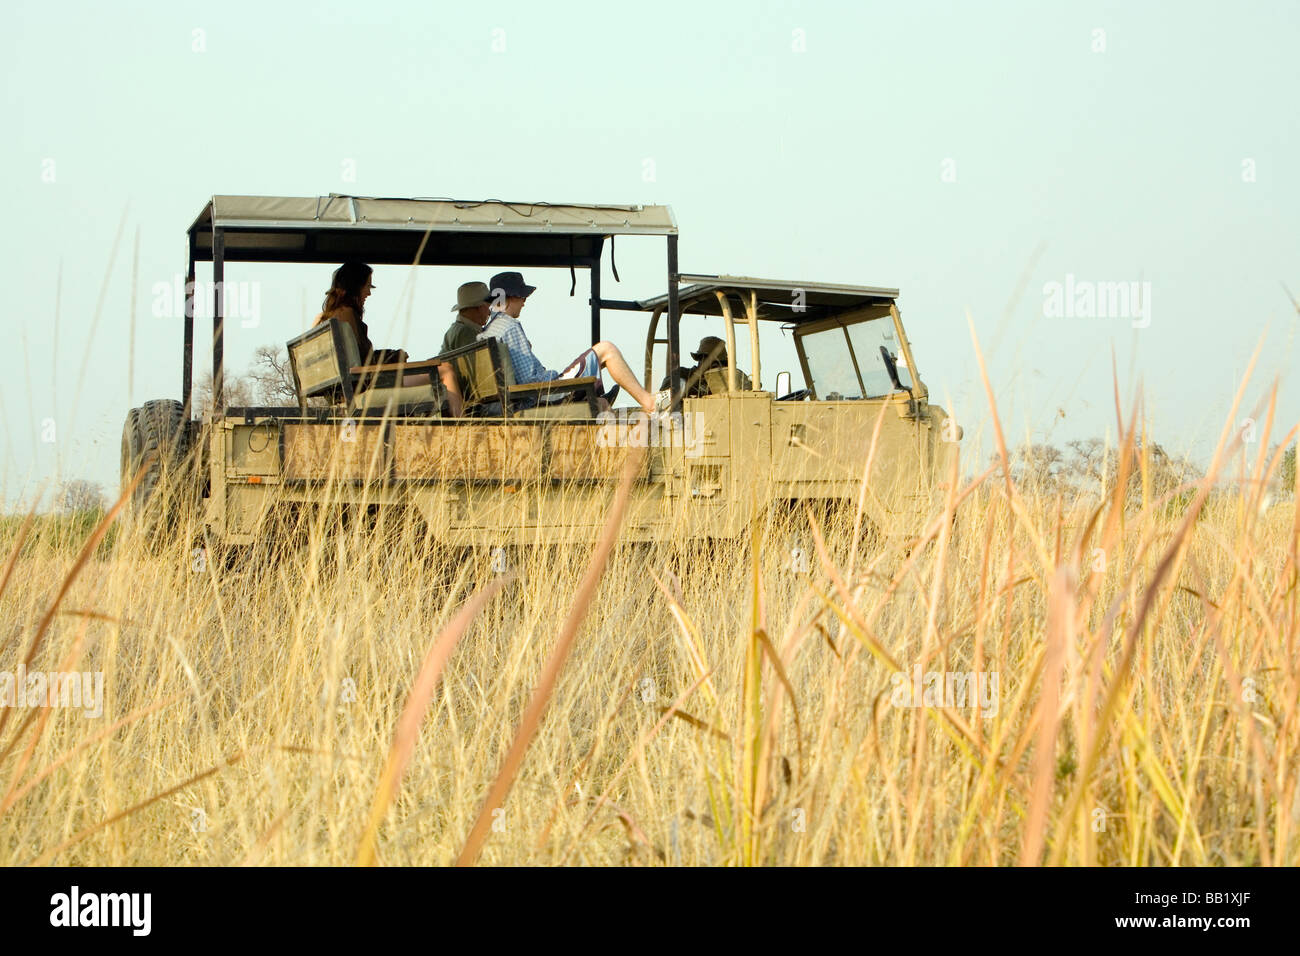 Ángulo de visión baja de una familia de safari, el delta del Okavango, Botswana Foto de stock